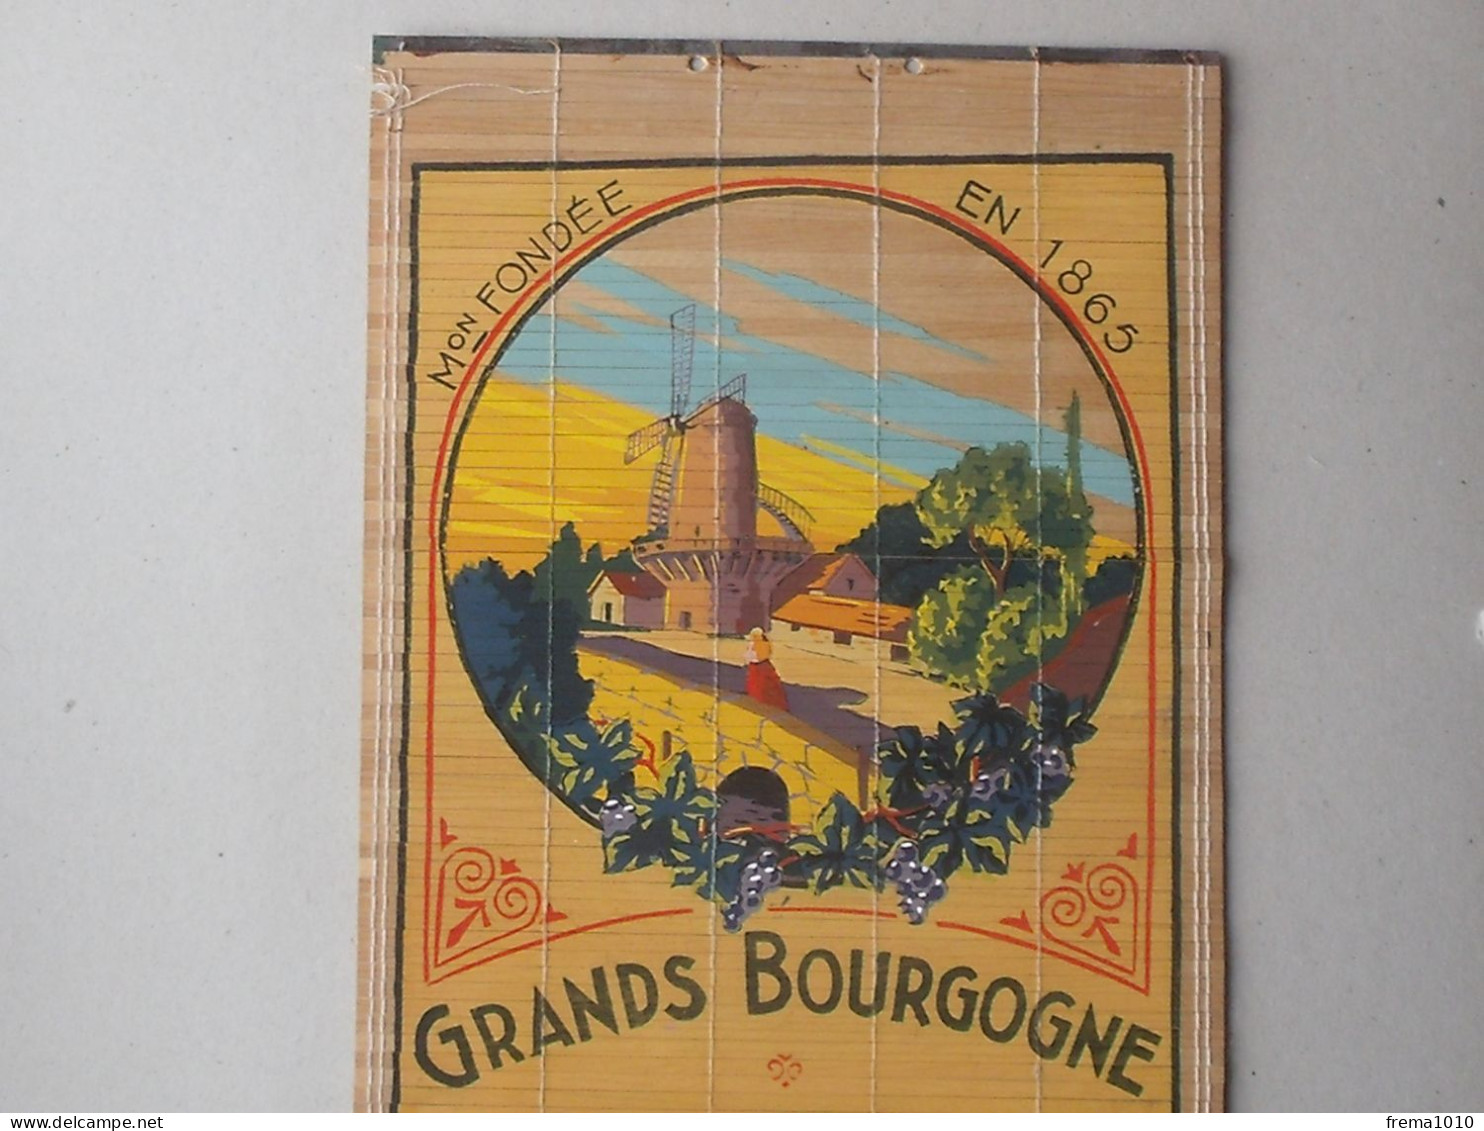 ROMANECHE-THORENS CHENAS: Store Publicitaire Ancien VIN MOULIN A VENT Bourgogne MACONNAIS Propr. JAMBON 1865 ROQUIN - Alcohol